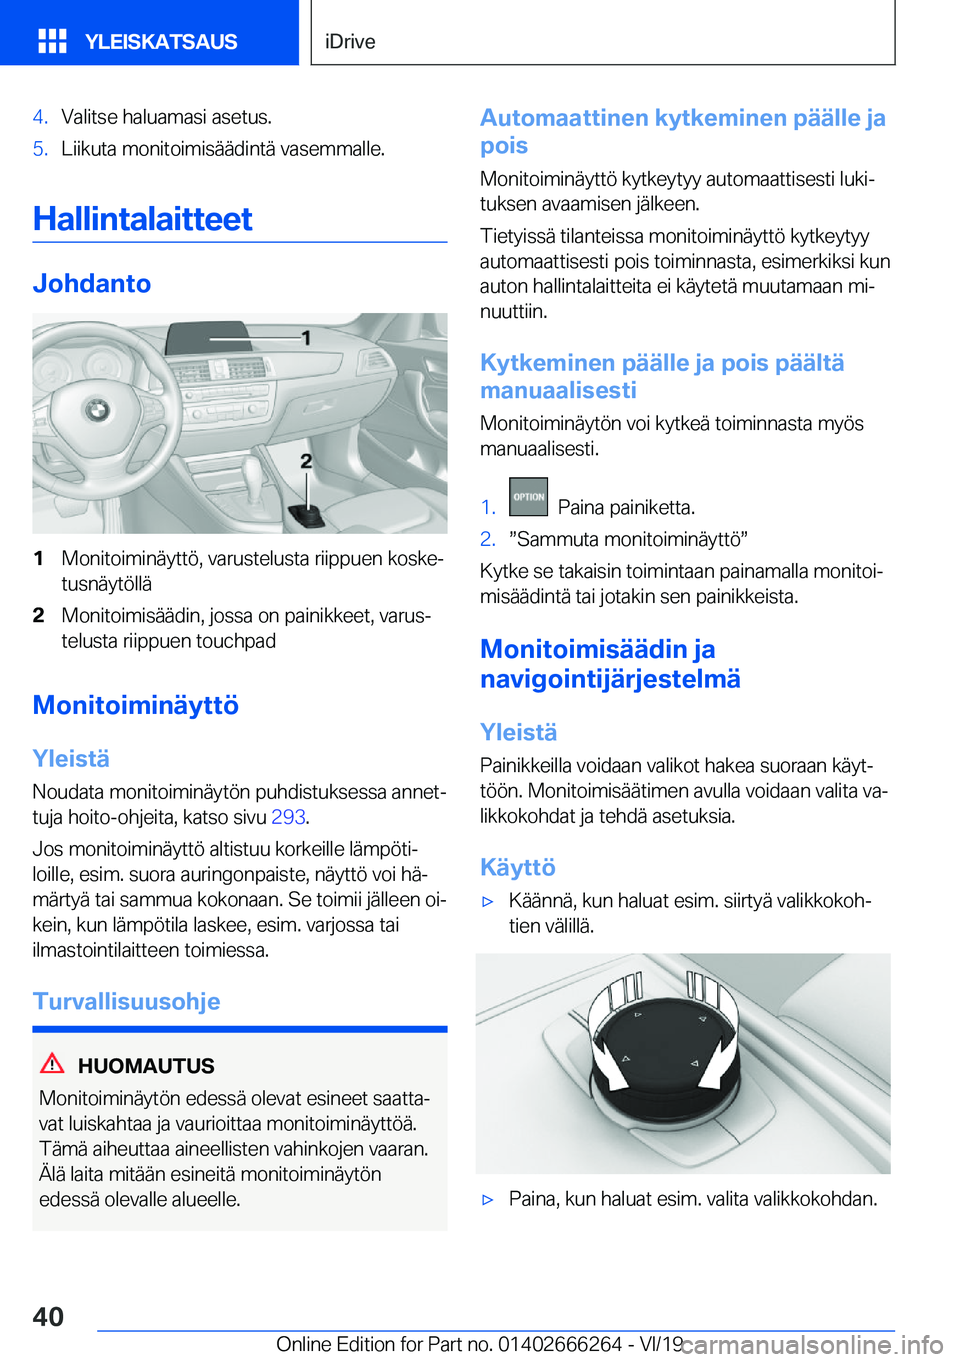 BMW 2 SERIES COUPE 2020  Omistajan Käsikirjat (in Finnish) �4�.�V�a�l�i�t�s�e��h�a�l�u�a�m�a�s�i��a�s�e�t�u�s�.�5�.�L�i�i�k�u�t�a��m�o�n�i�t�o�i�m�i�s�